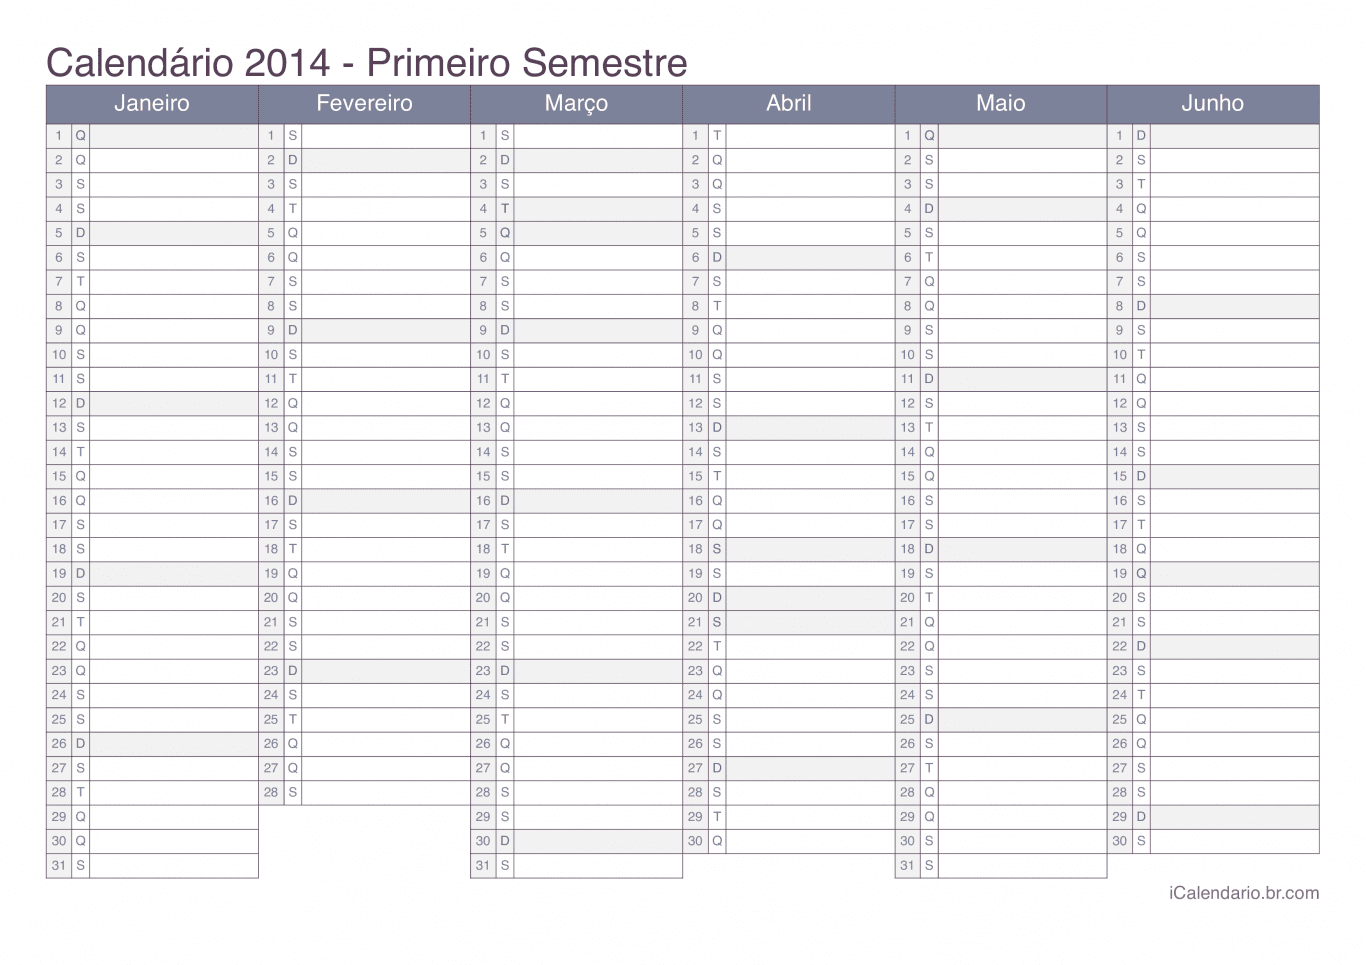 Calendário por semestre 2014 - Office